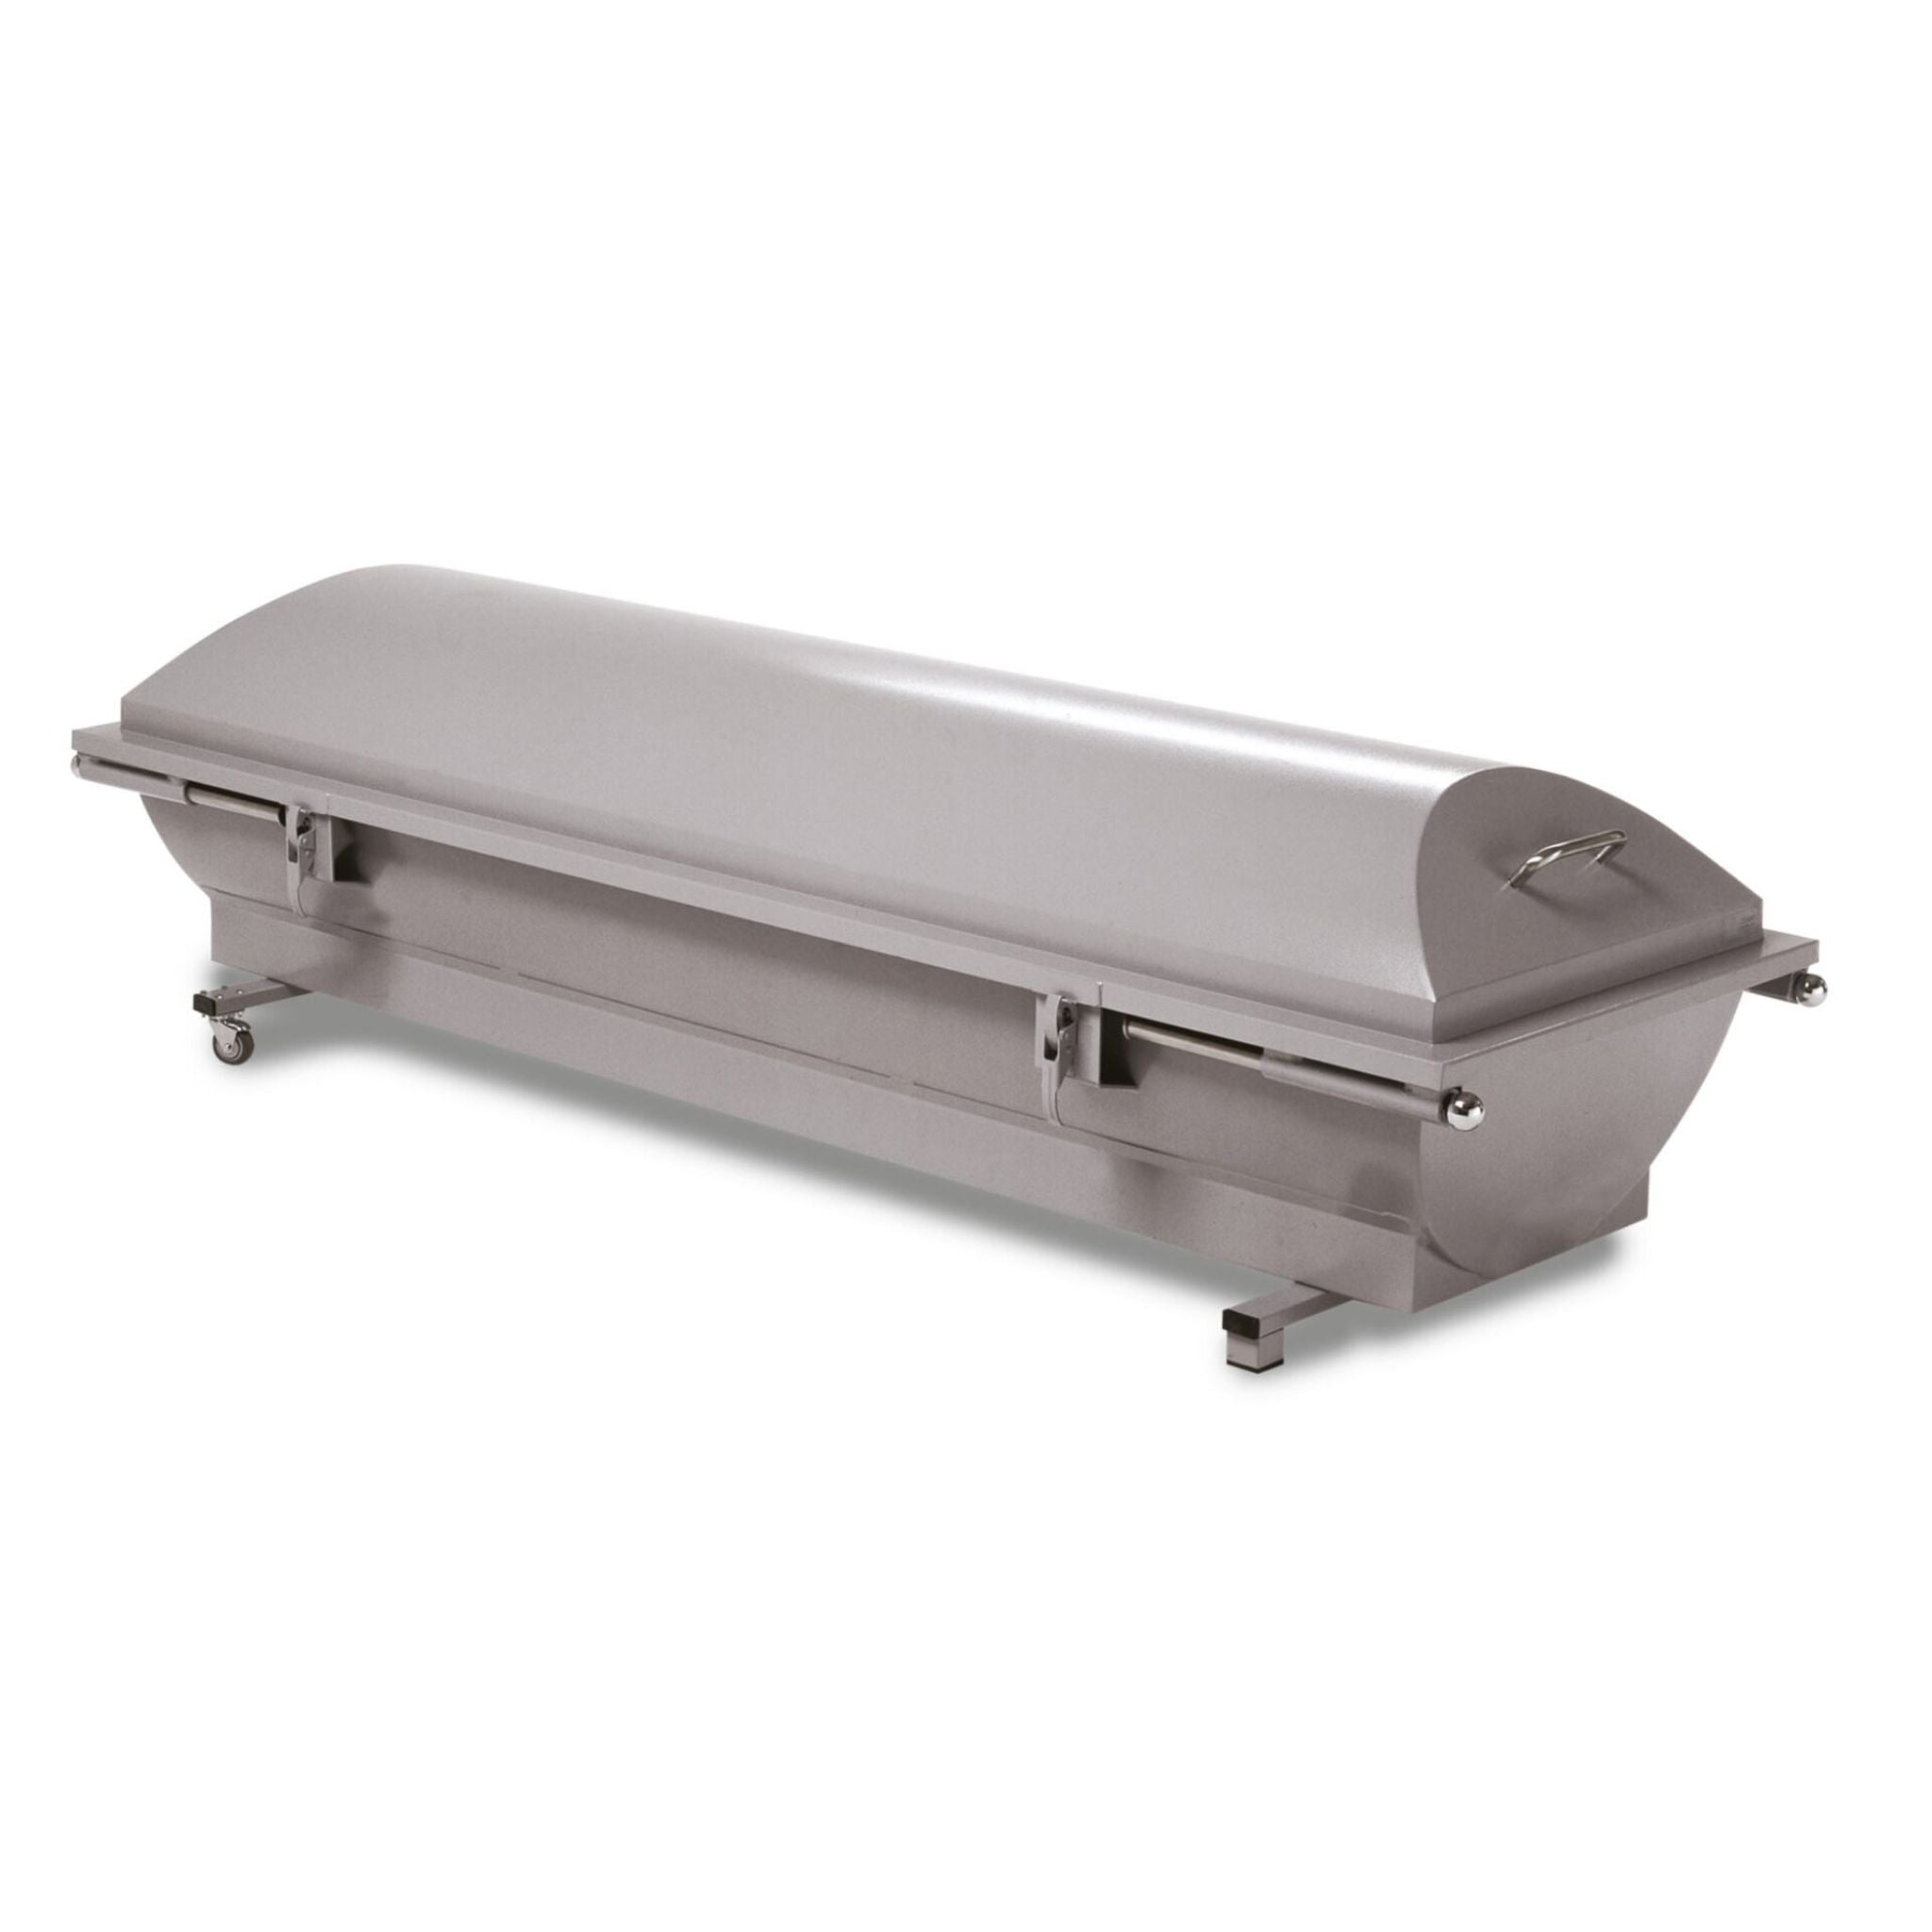 Aluminum salvage coffin